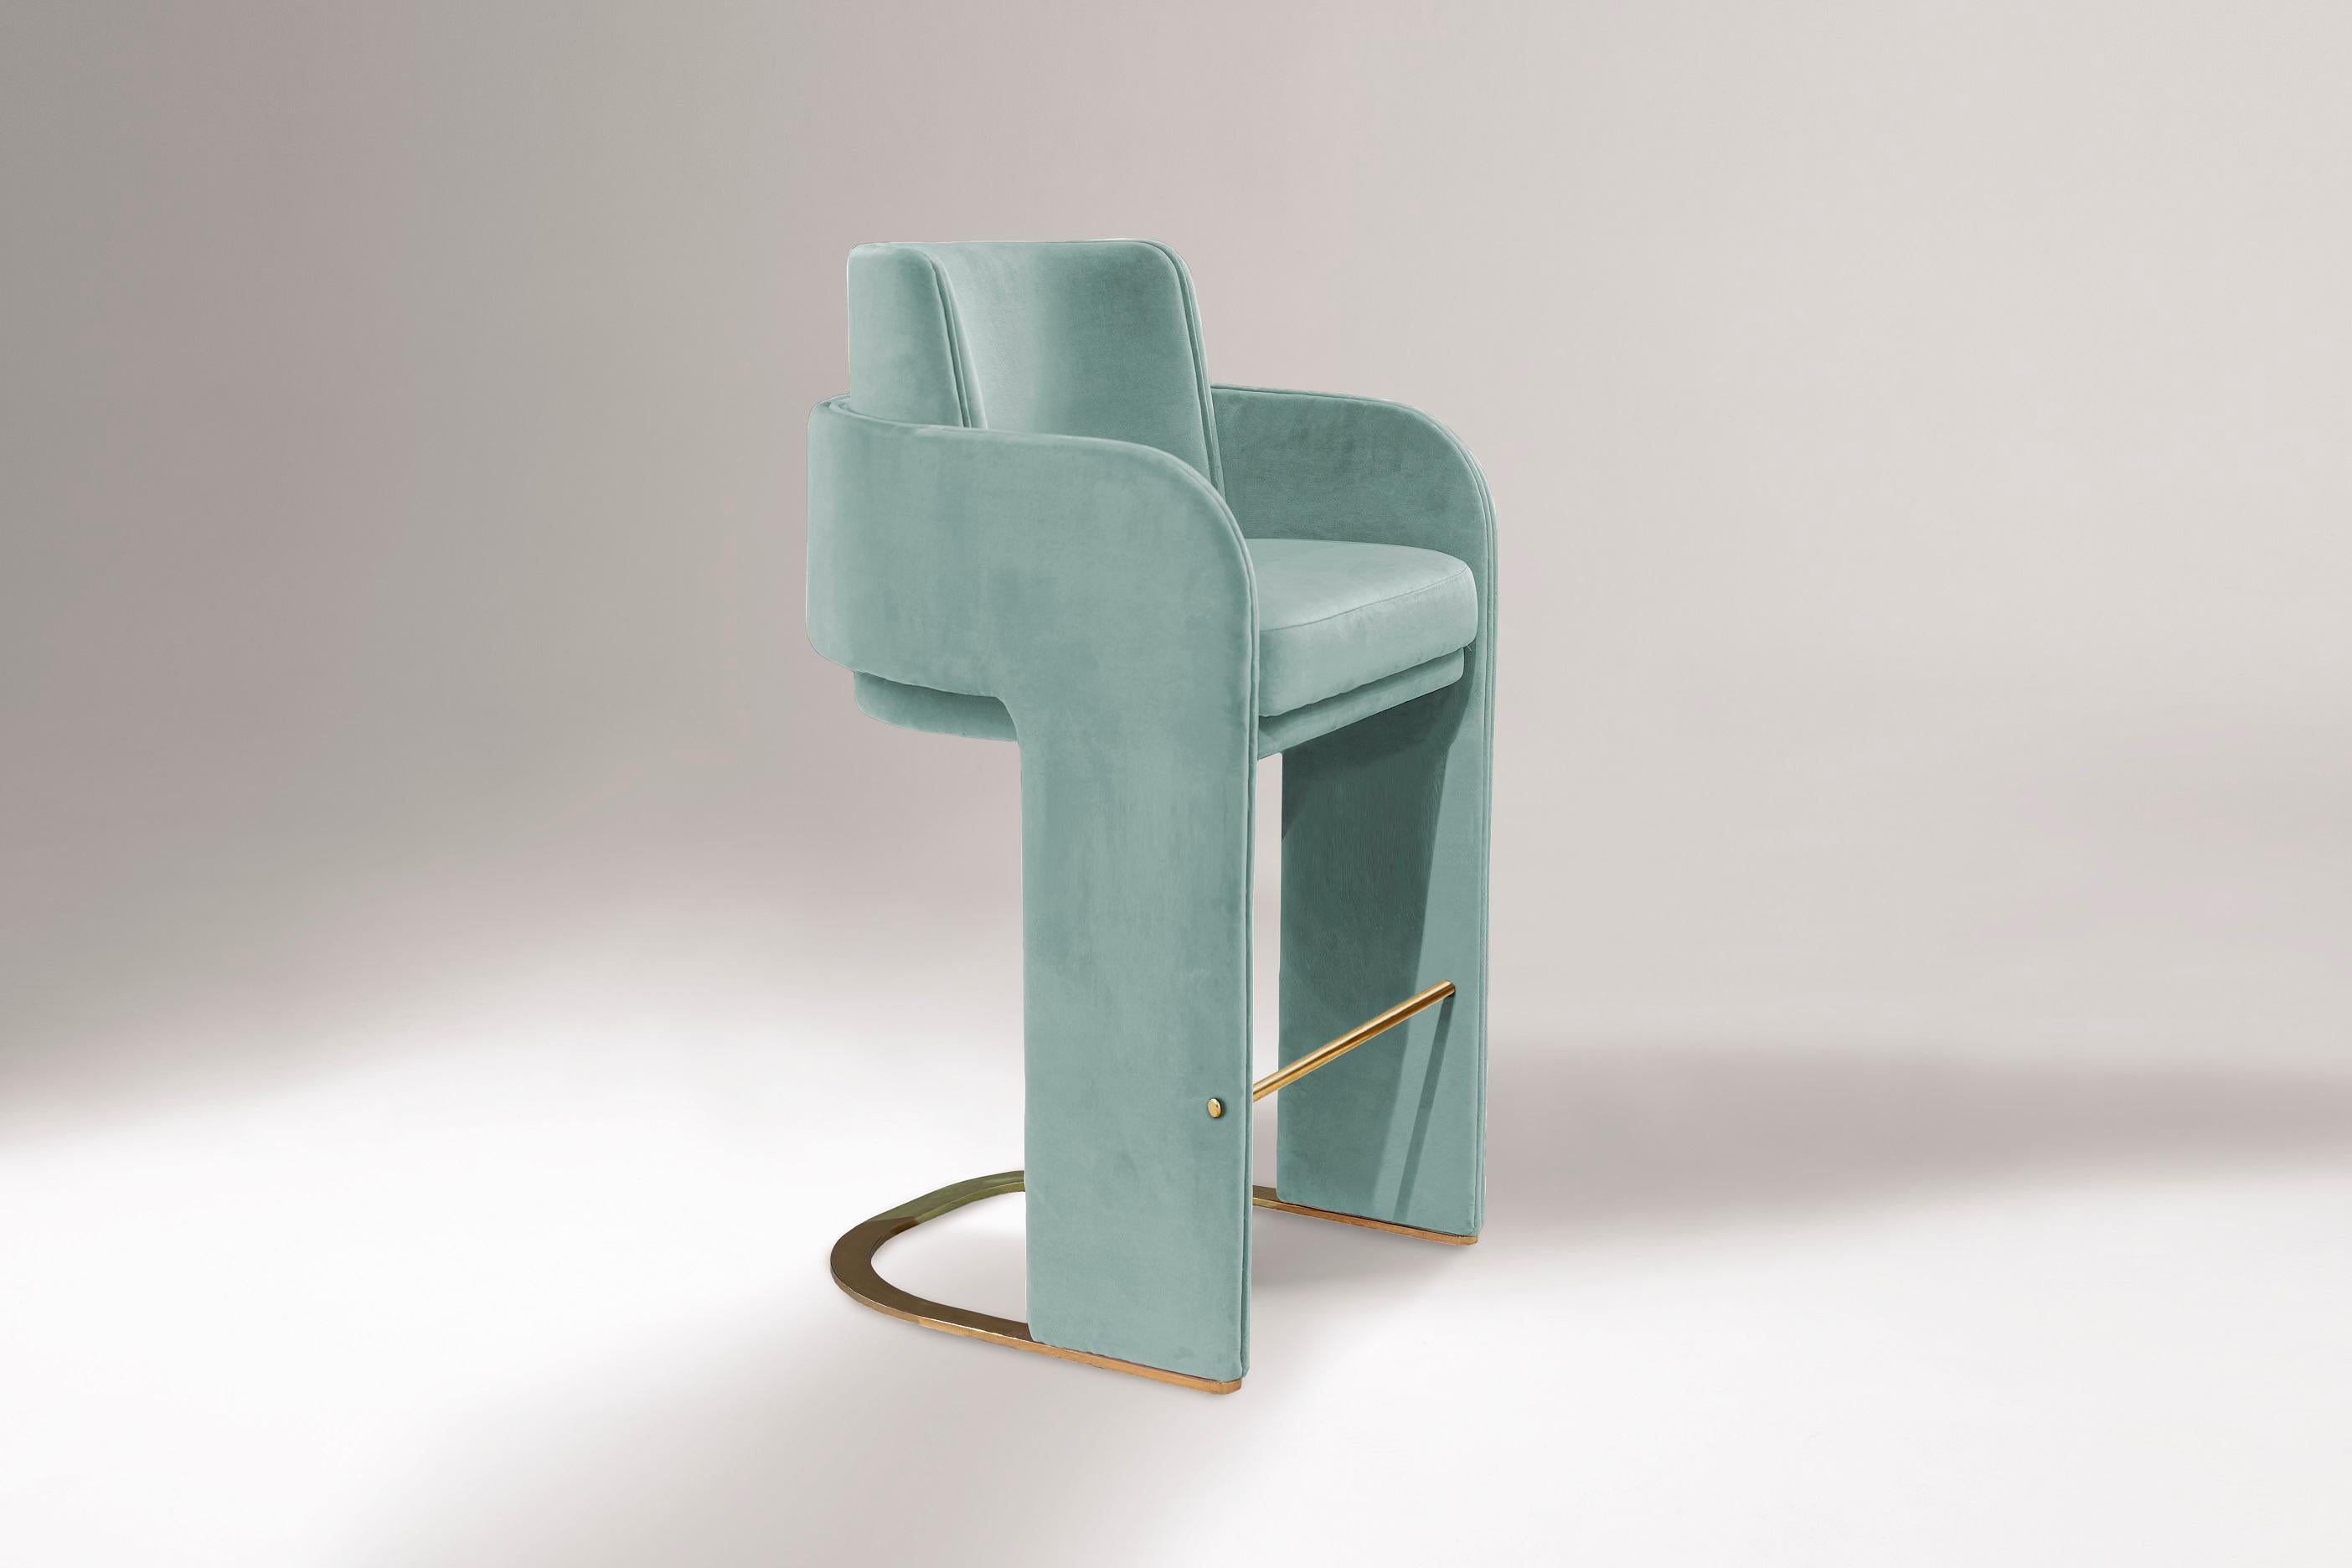 La chaise de bar Odisseia incarne l'esprit esthétique de l'ère spatiale, un nouveau type de luxe discret et de confort inspiré d'une ère futuriste créée par de nouvelles expériences visuelles et des concepts du futur. Cette pièce sans effort mais